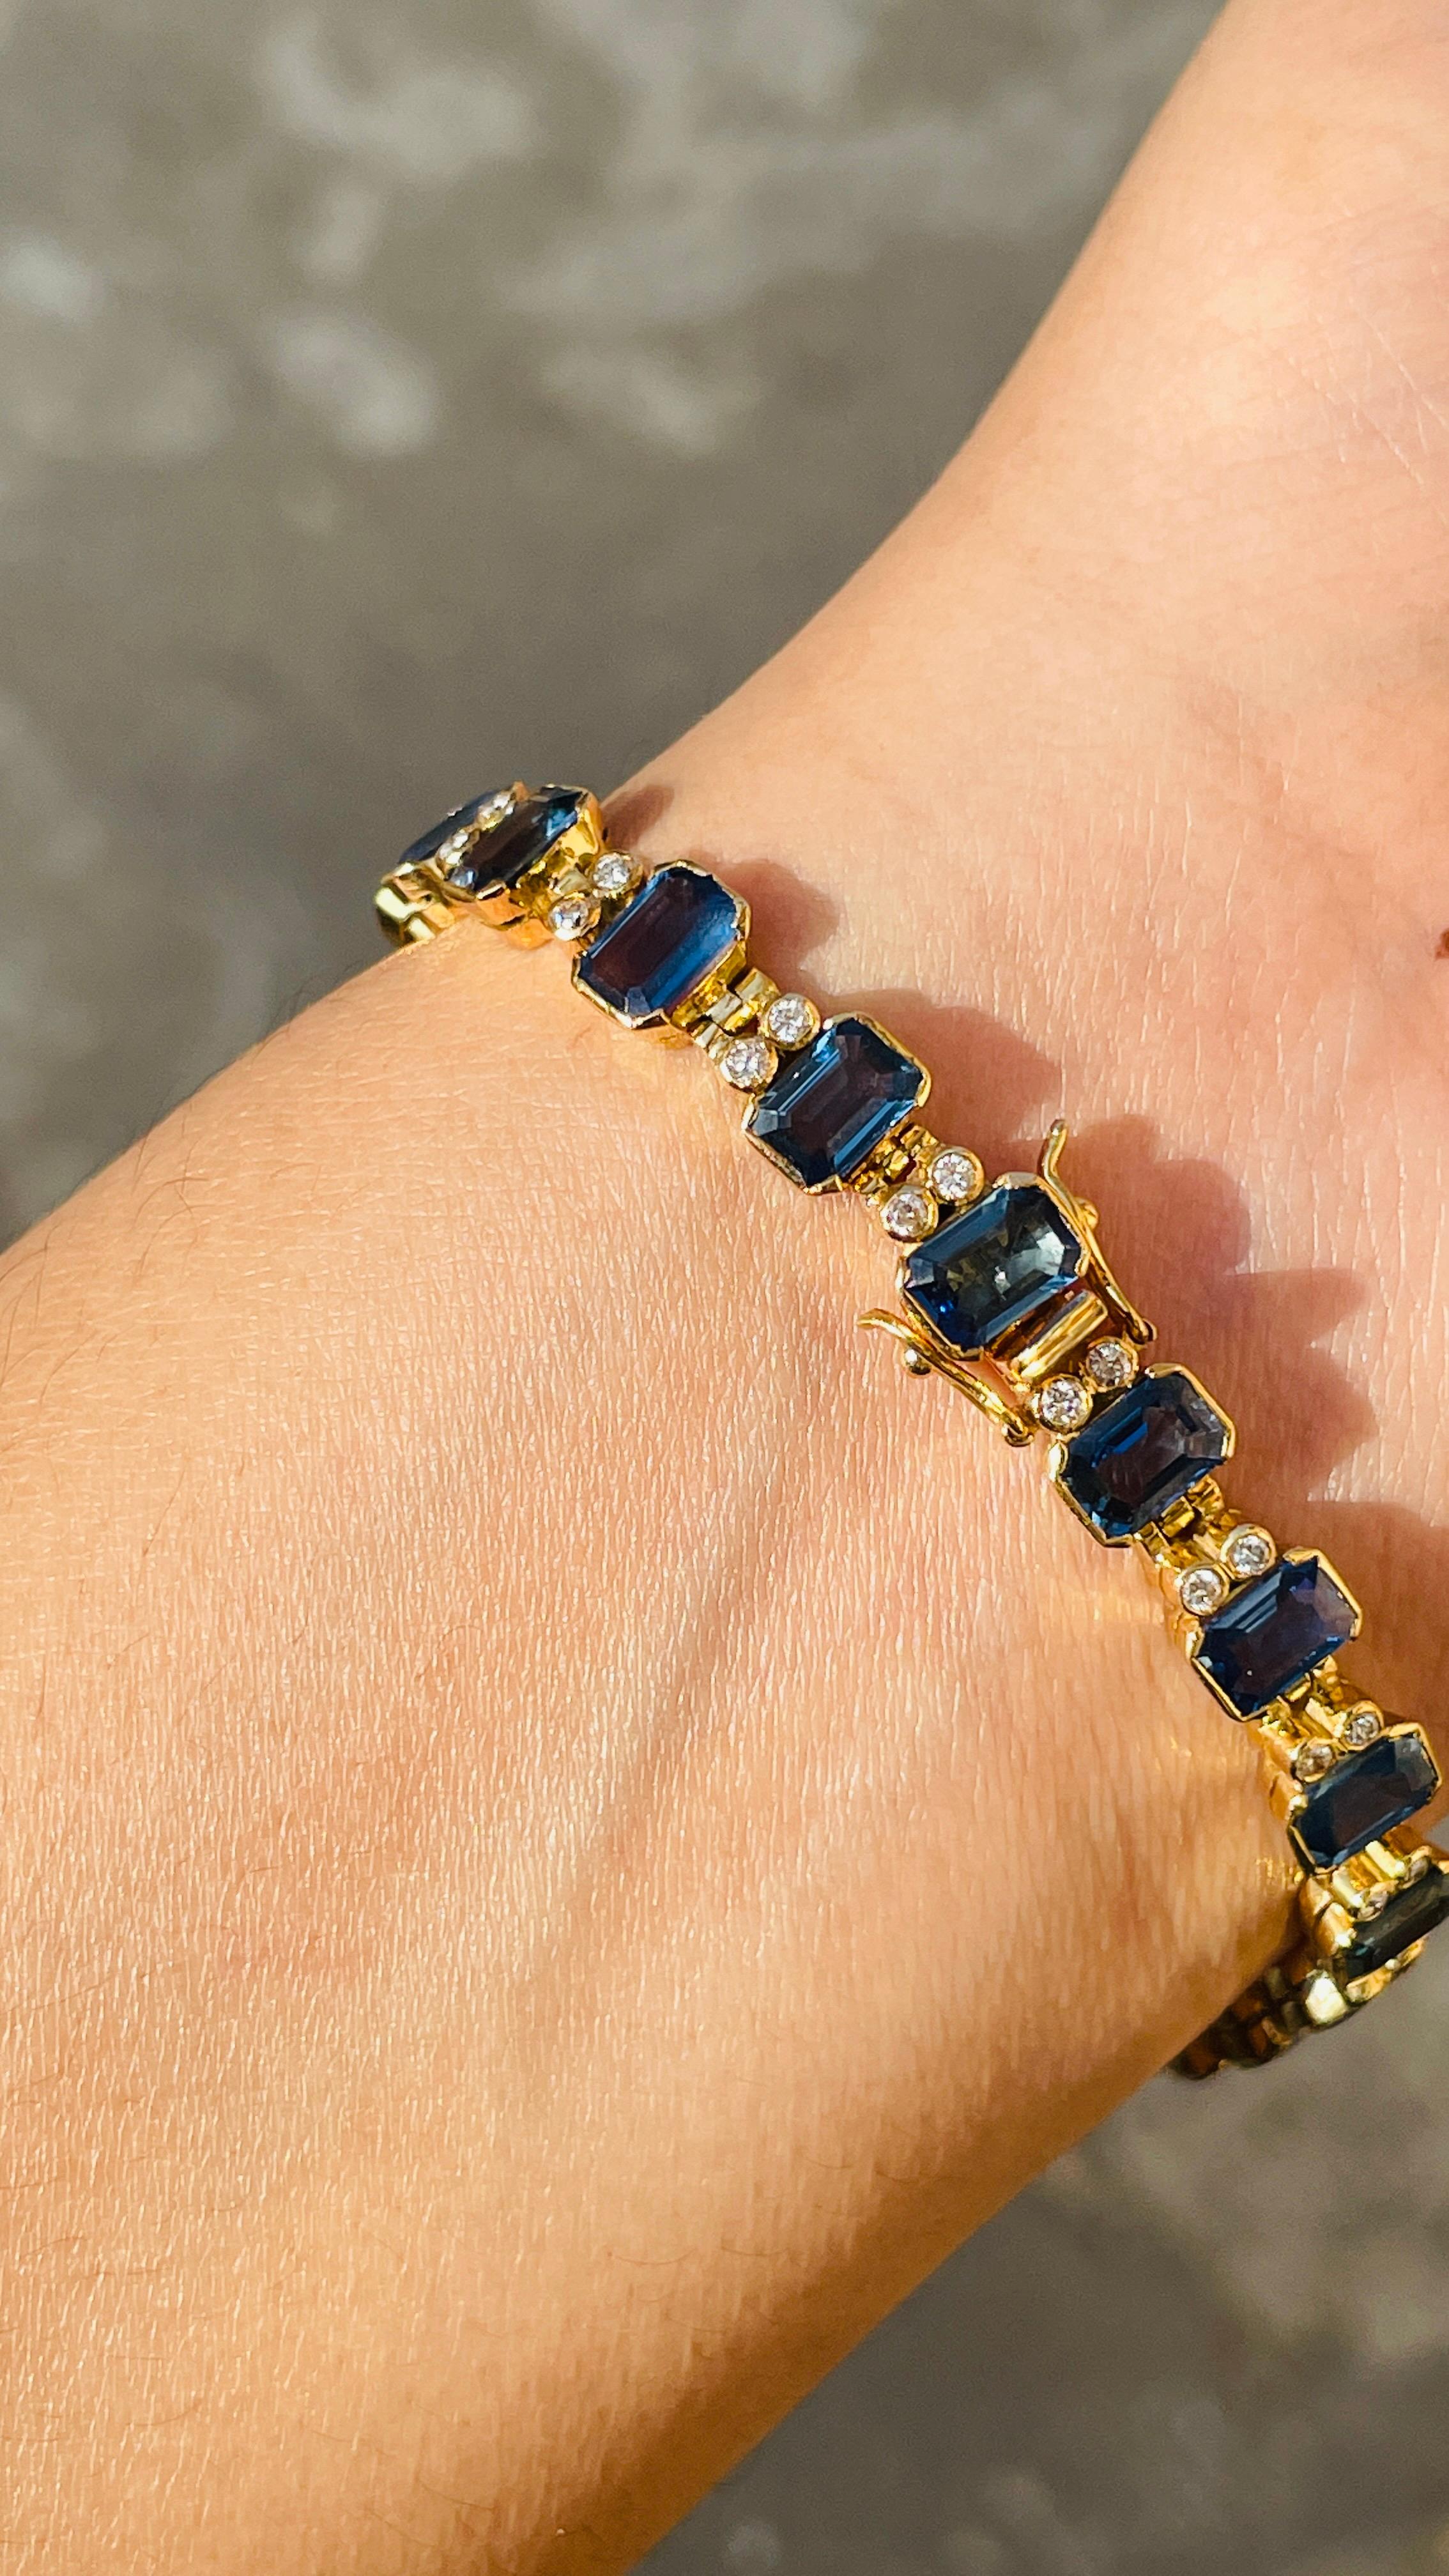 Armband aus blauem Saphir in 18K Gold. Es hat einen perfekten achteckigen Schliff Edelstein, um Sie stehen auf jeder Gelegenheit oder ein Ereignis.
Ein Tennisarmband ist ein wichtiges Schmuckstück für Ihren Hochzeitstag. Der schlichte und elegante